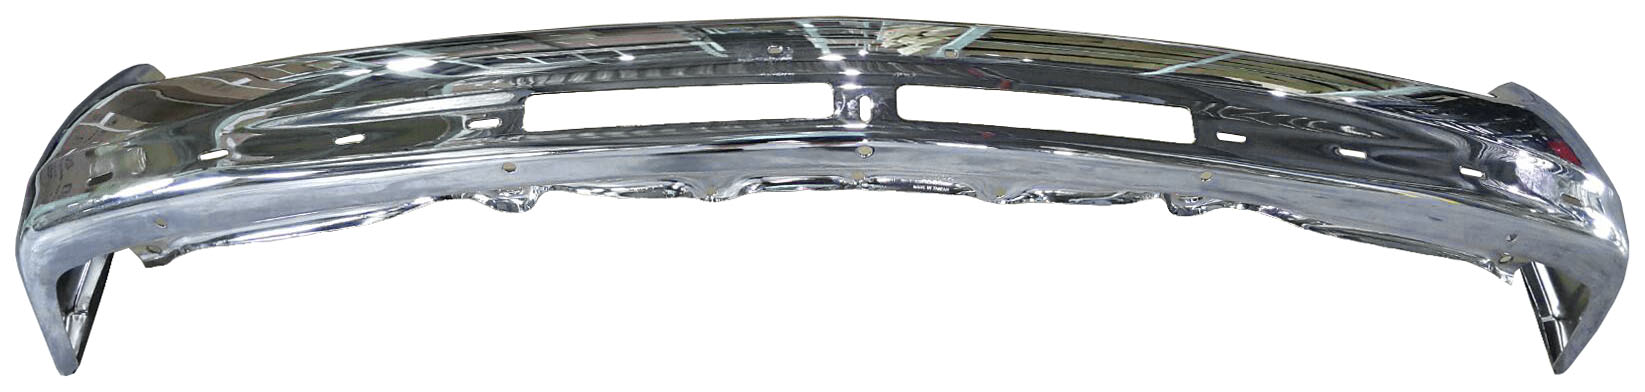 Aftermarket METAL FRONT BUMPERS for CHEVROLET - SILVERADO 2500, SILVERADO 2500,99-02,Front bumper face bar